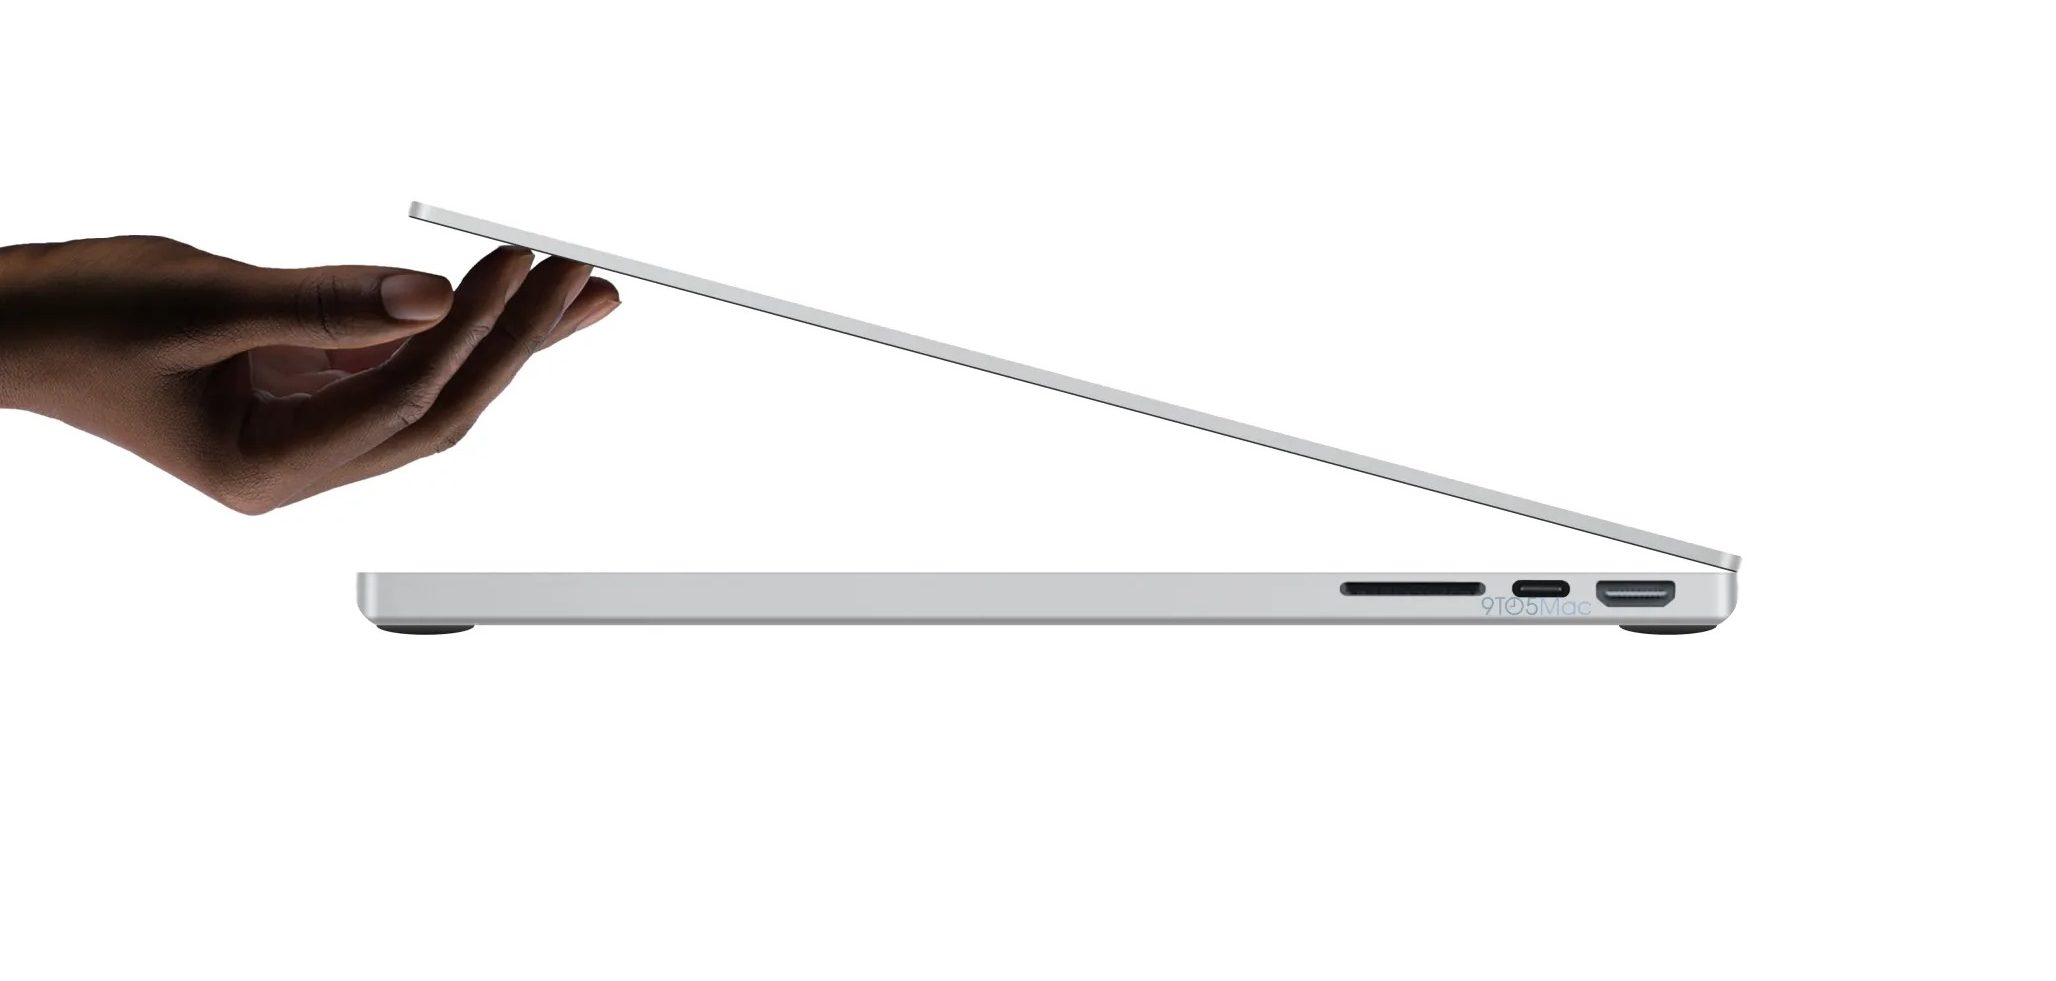 Lộ diện ảnh rò rỉ của MacBook Pro mới với các cổng kết nối quen thuộc